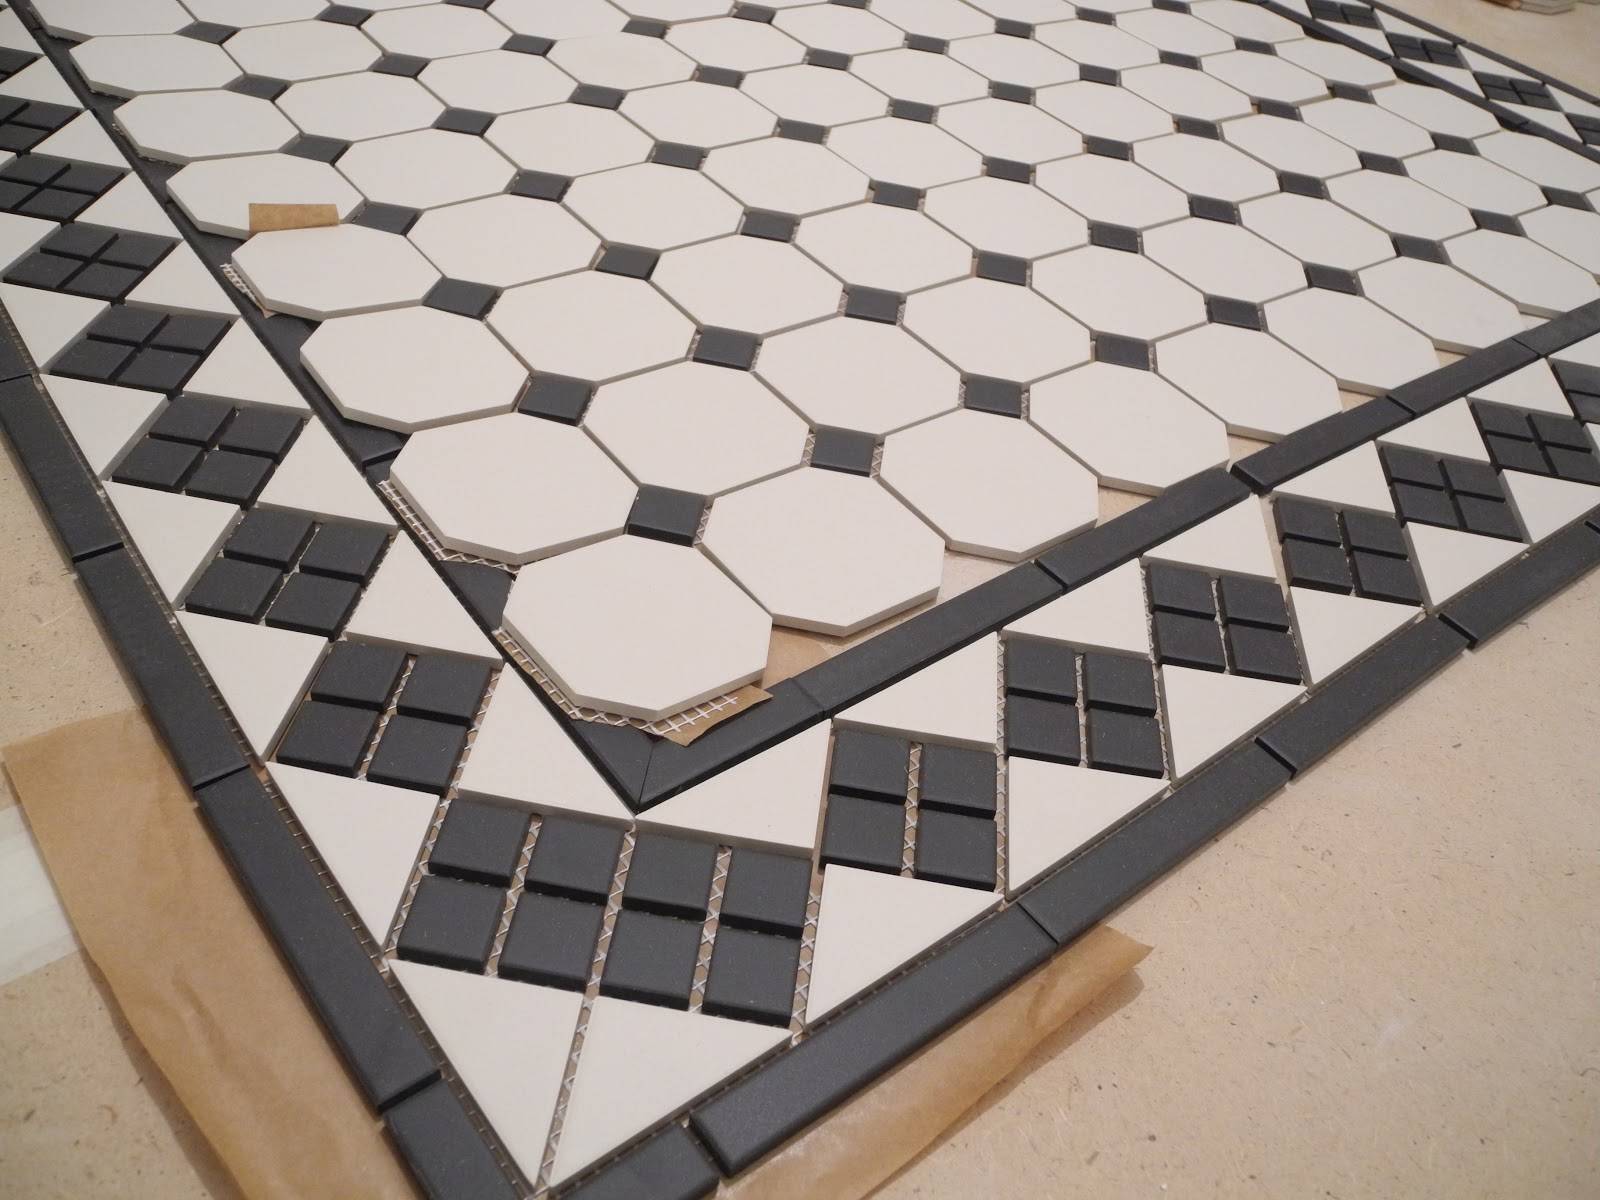 Напольная плитка со вставками белые модели с декоративными квадратиками на пол, использование квадратных вставок из керамогранита для расстановки акцентов